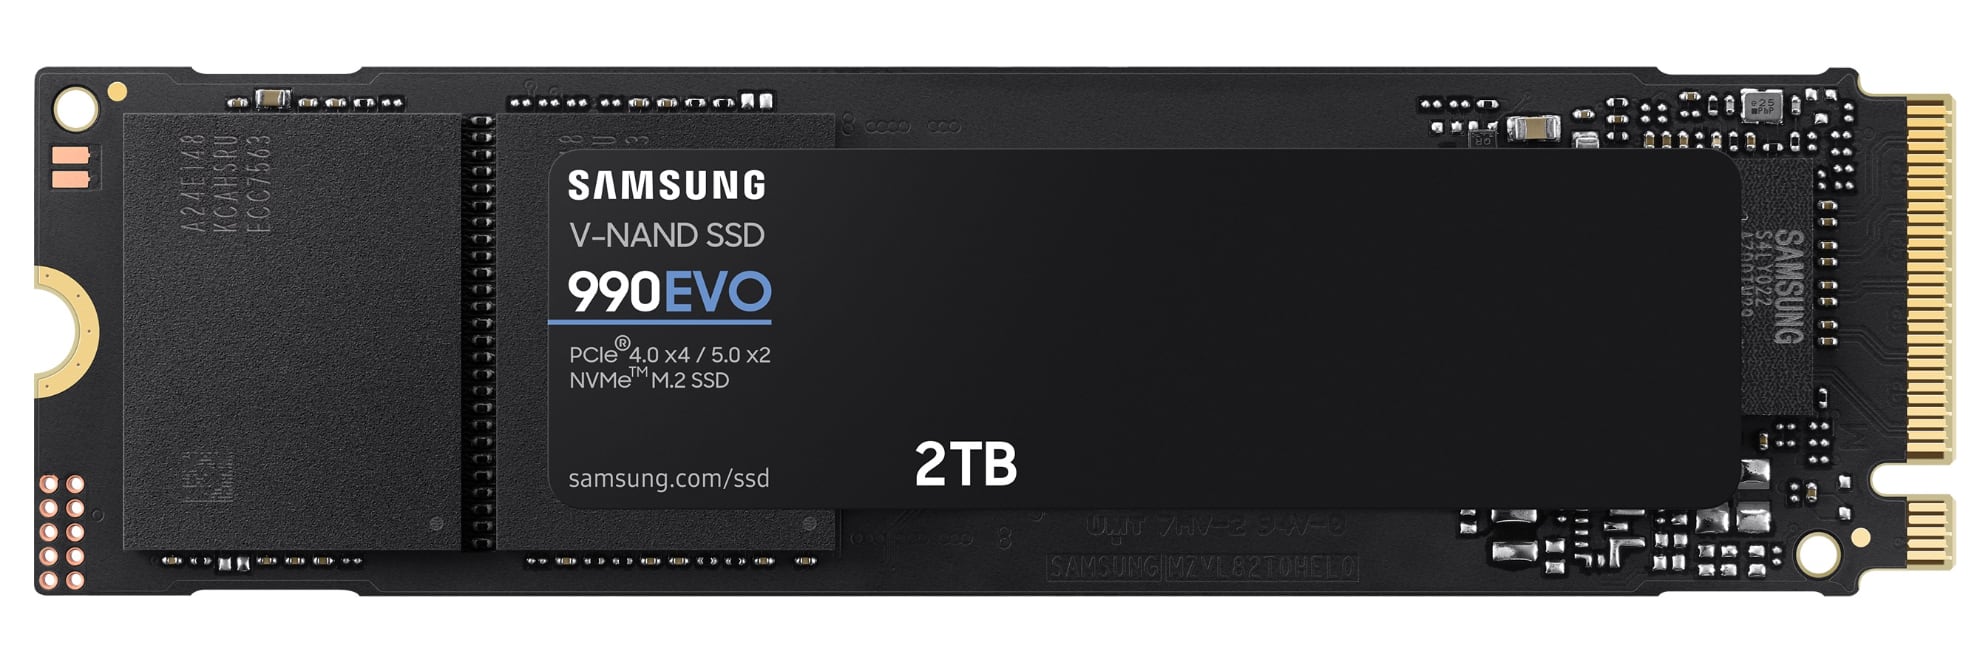 Samsung анонсировала скоростной накопитель SSD 990 EVO, он будет стоить $210 за 2 ТБ-2